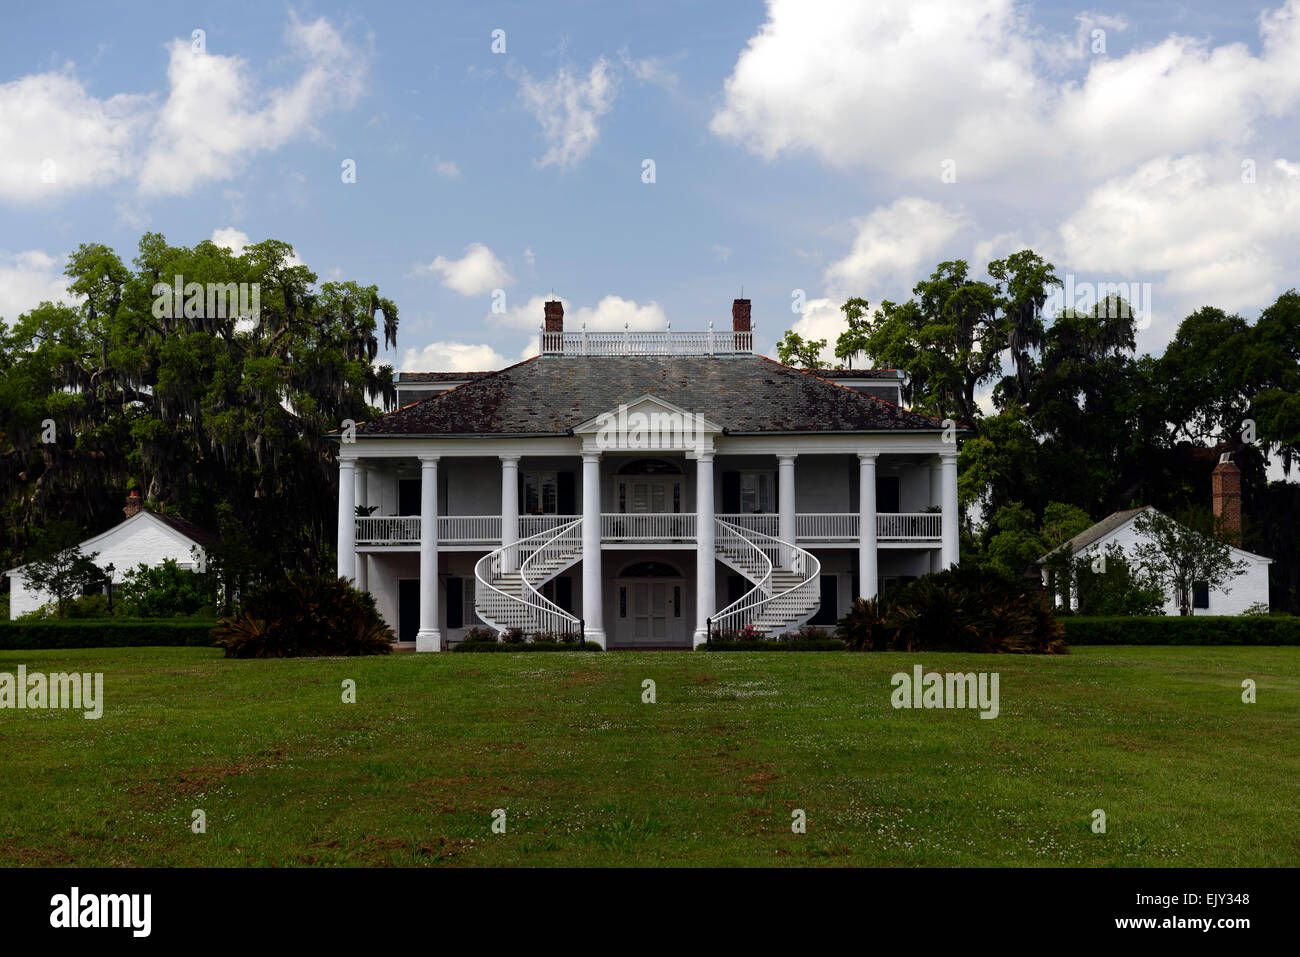 Plantation evergreen wallace l'esclavage esclaves de la Louisiane chambre de style néo-grec de la propriété historique de la canne à sucre RU USA Banque D'Images